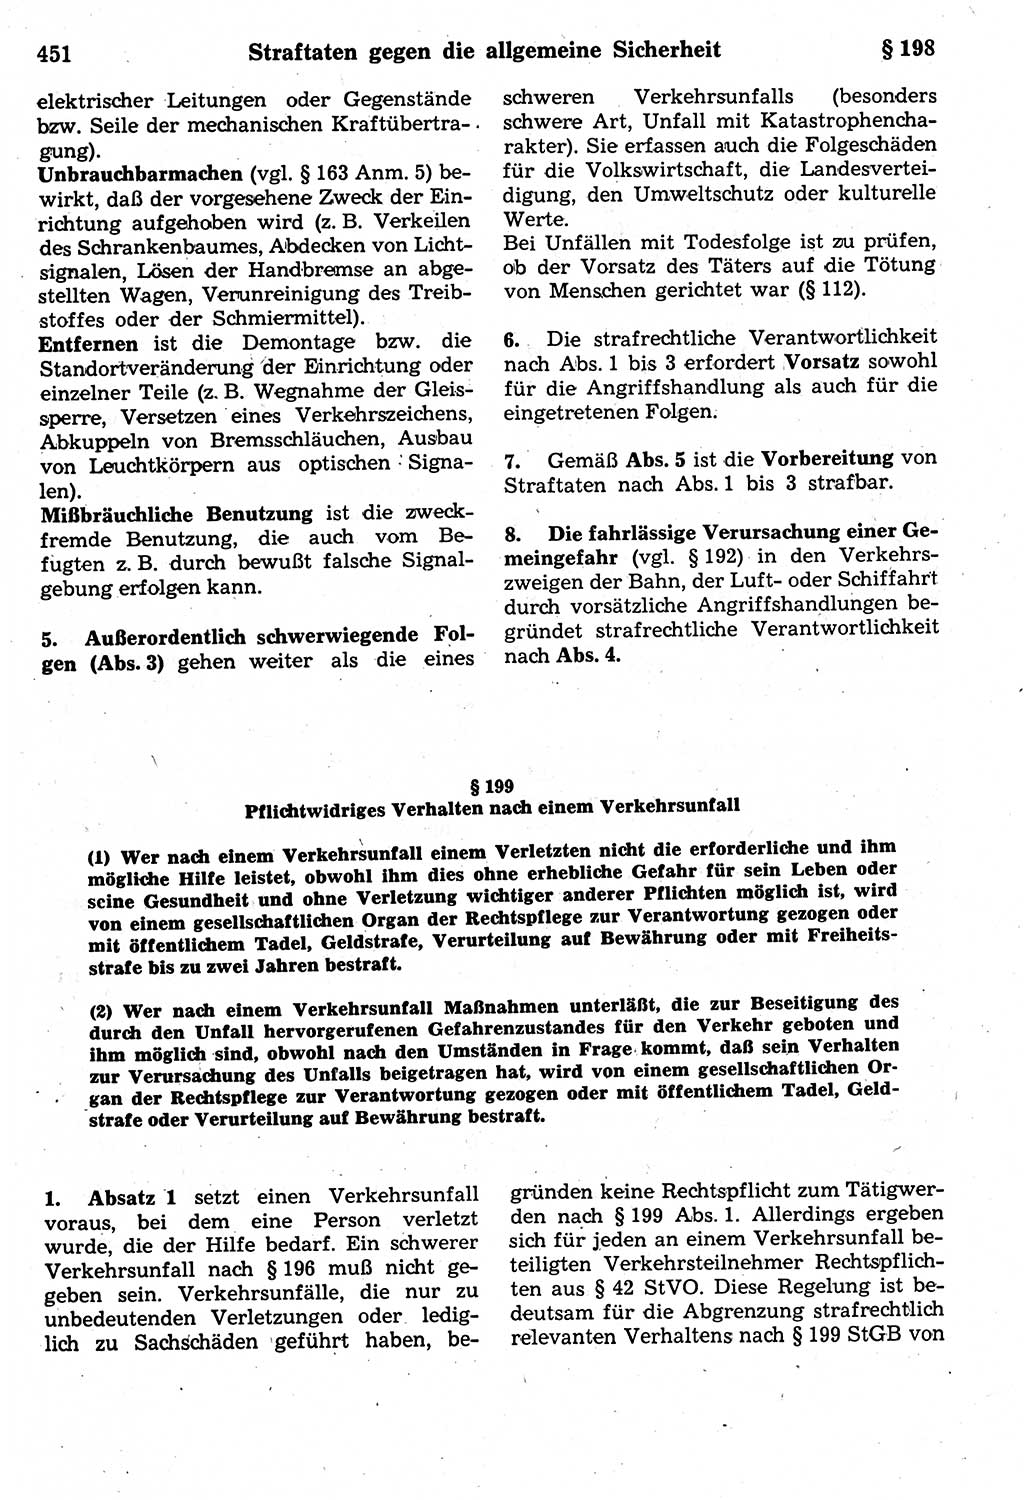 Strafrecht der Deutschen Demokratischen Republik (DDR), Kommentar zum Strafgesetzbuch (StGB) 1987, Seite 451 (Strafr. DDR Komm. StGB 1987, S. 451)